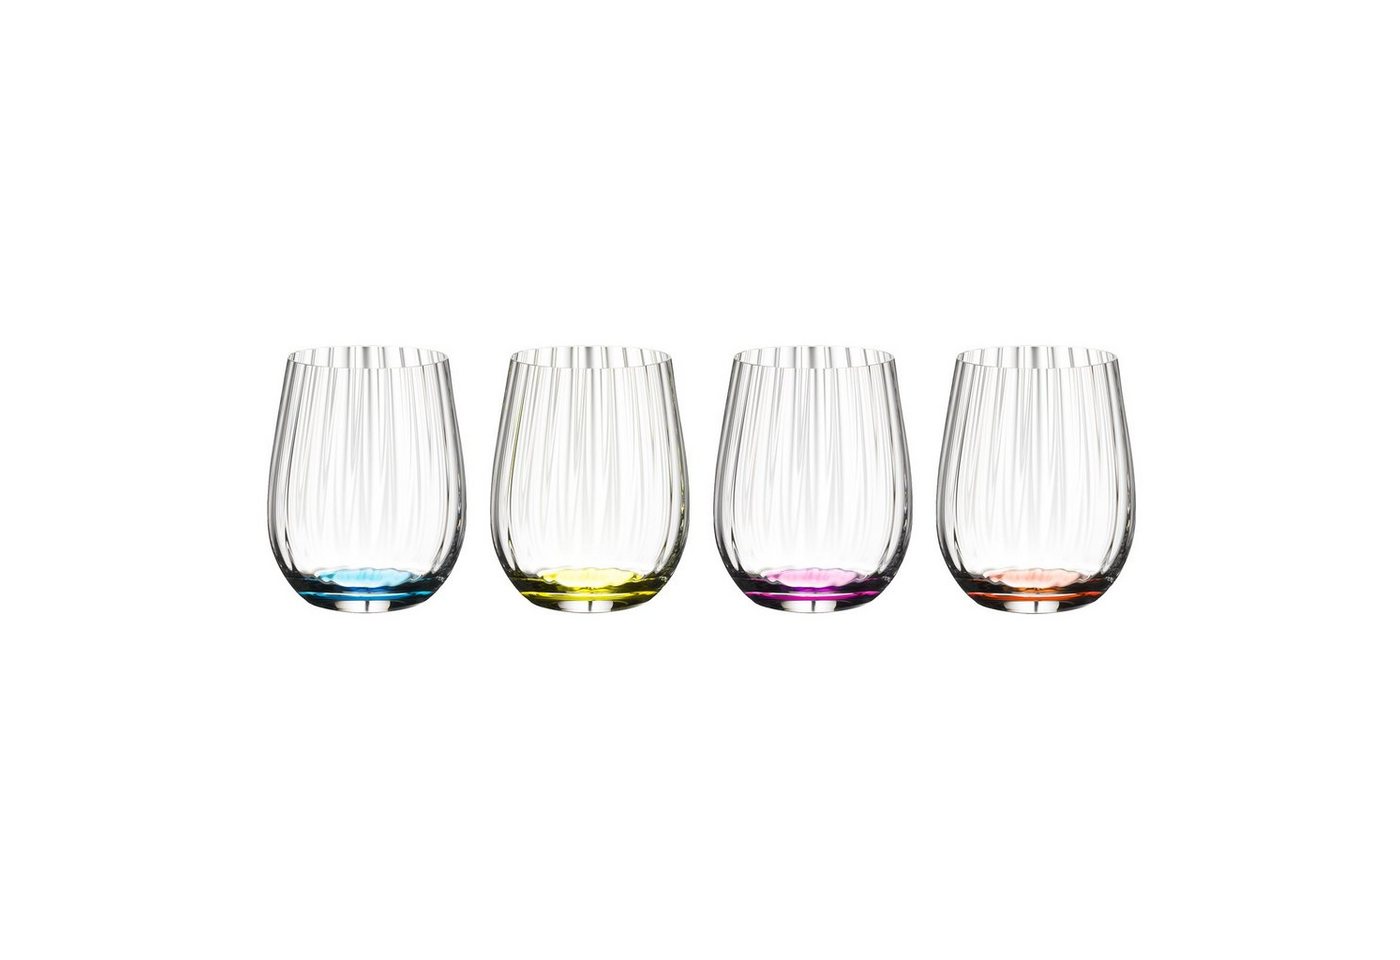 RIEDEL THE WINE GLASS COMPANY Glas Tumbler Collection, Kristallglas von RIEDEL THE WINE GLASS COMPANY